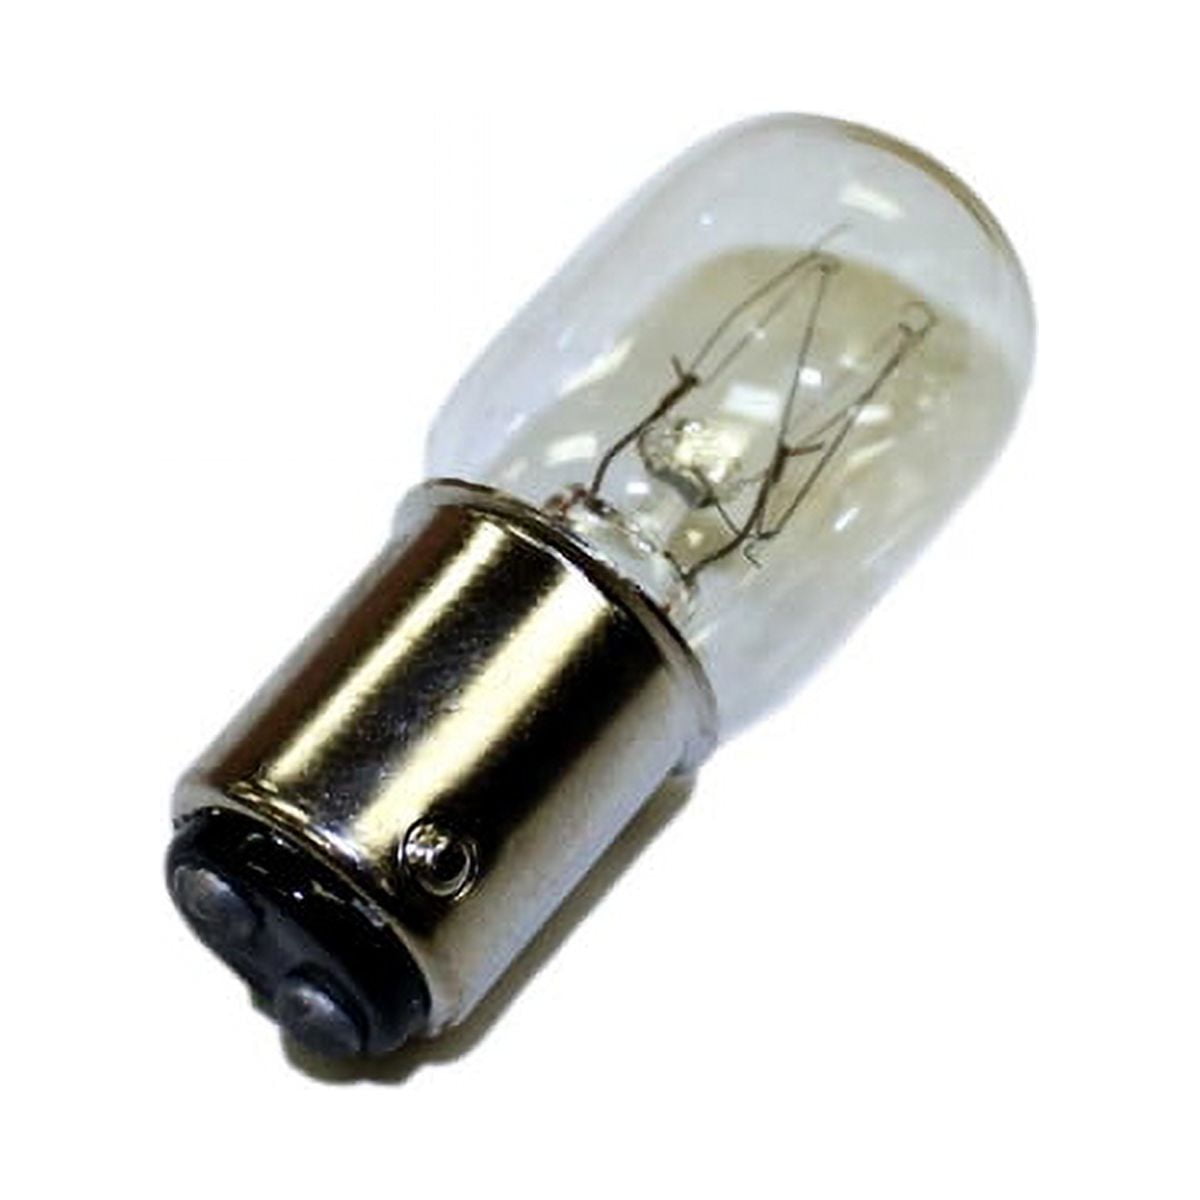 E17 15W Sewing Machine Light Bulb For Singer 15-30 15-88 15-90 27 Fridge